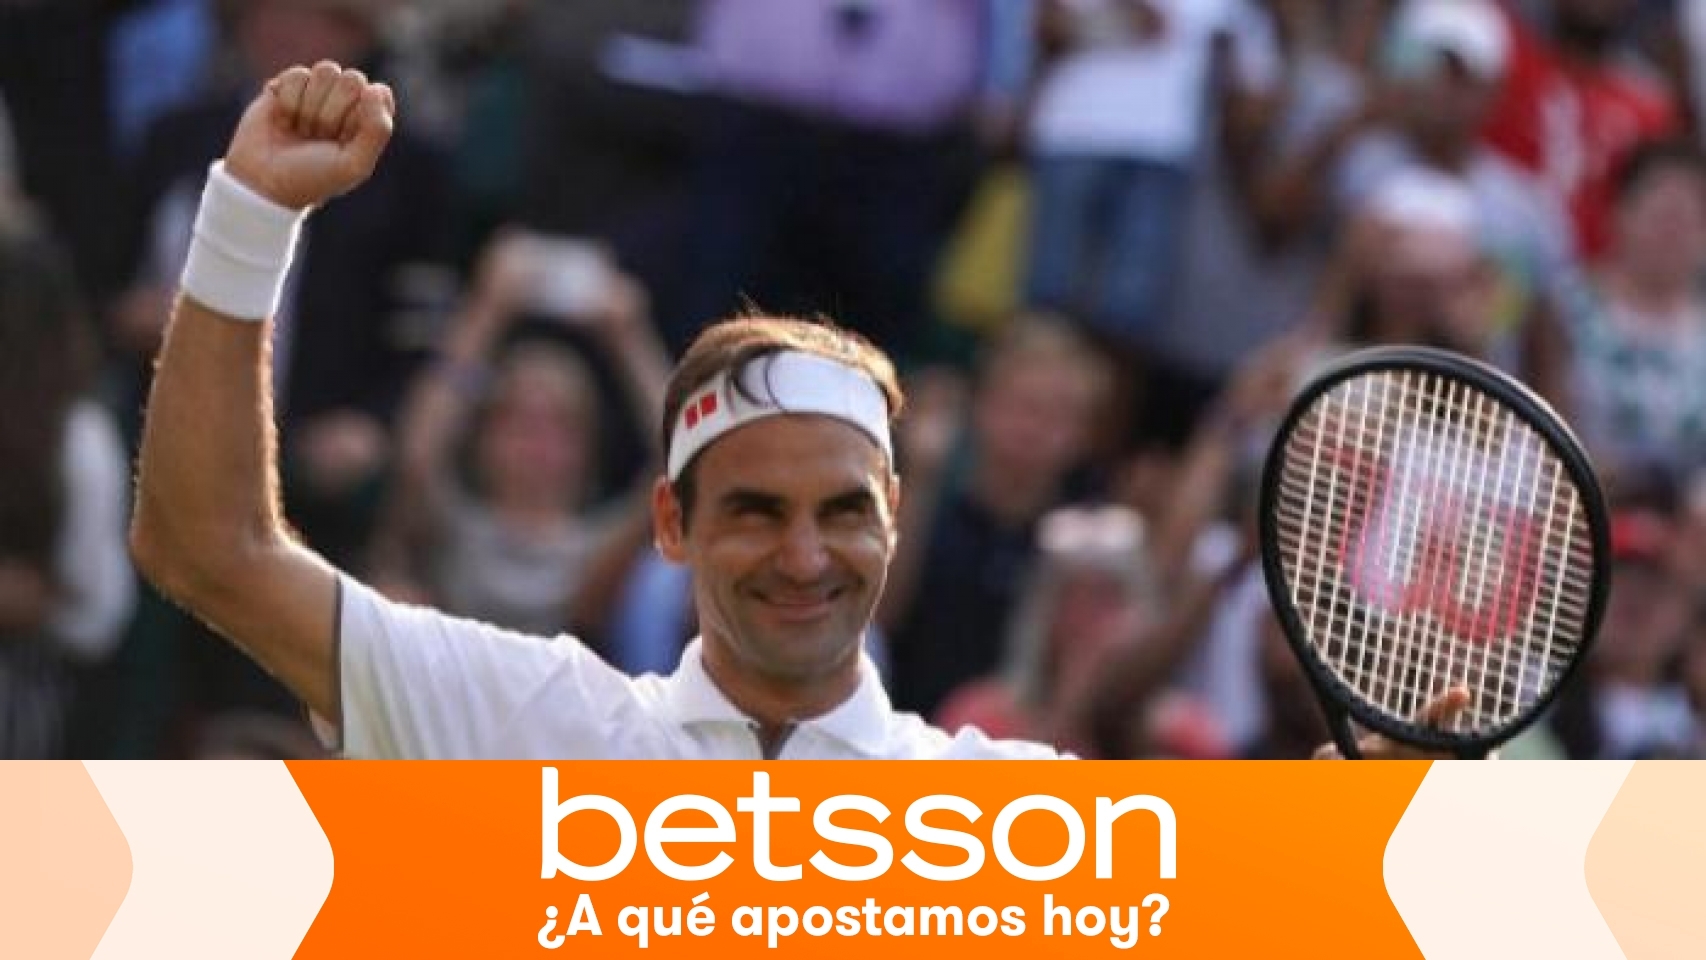 Gana 100 euros con la victoria de Federer en la final de Wimbledon